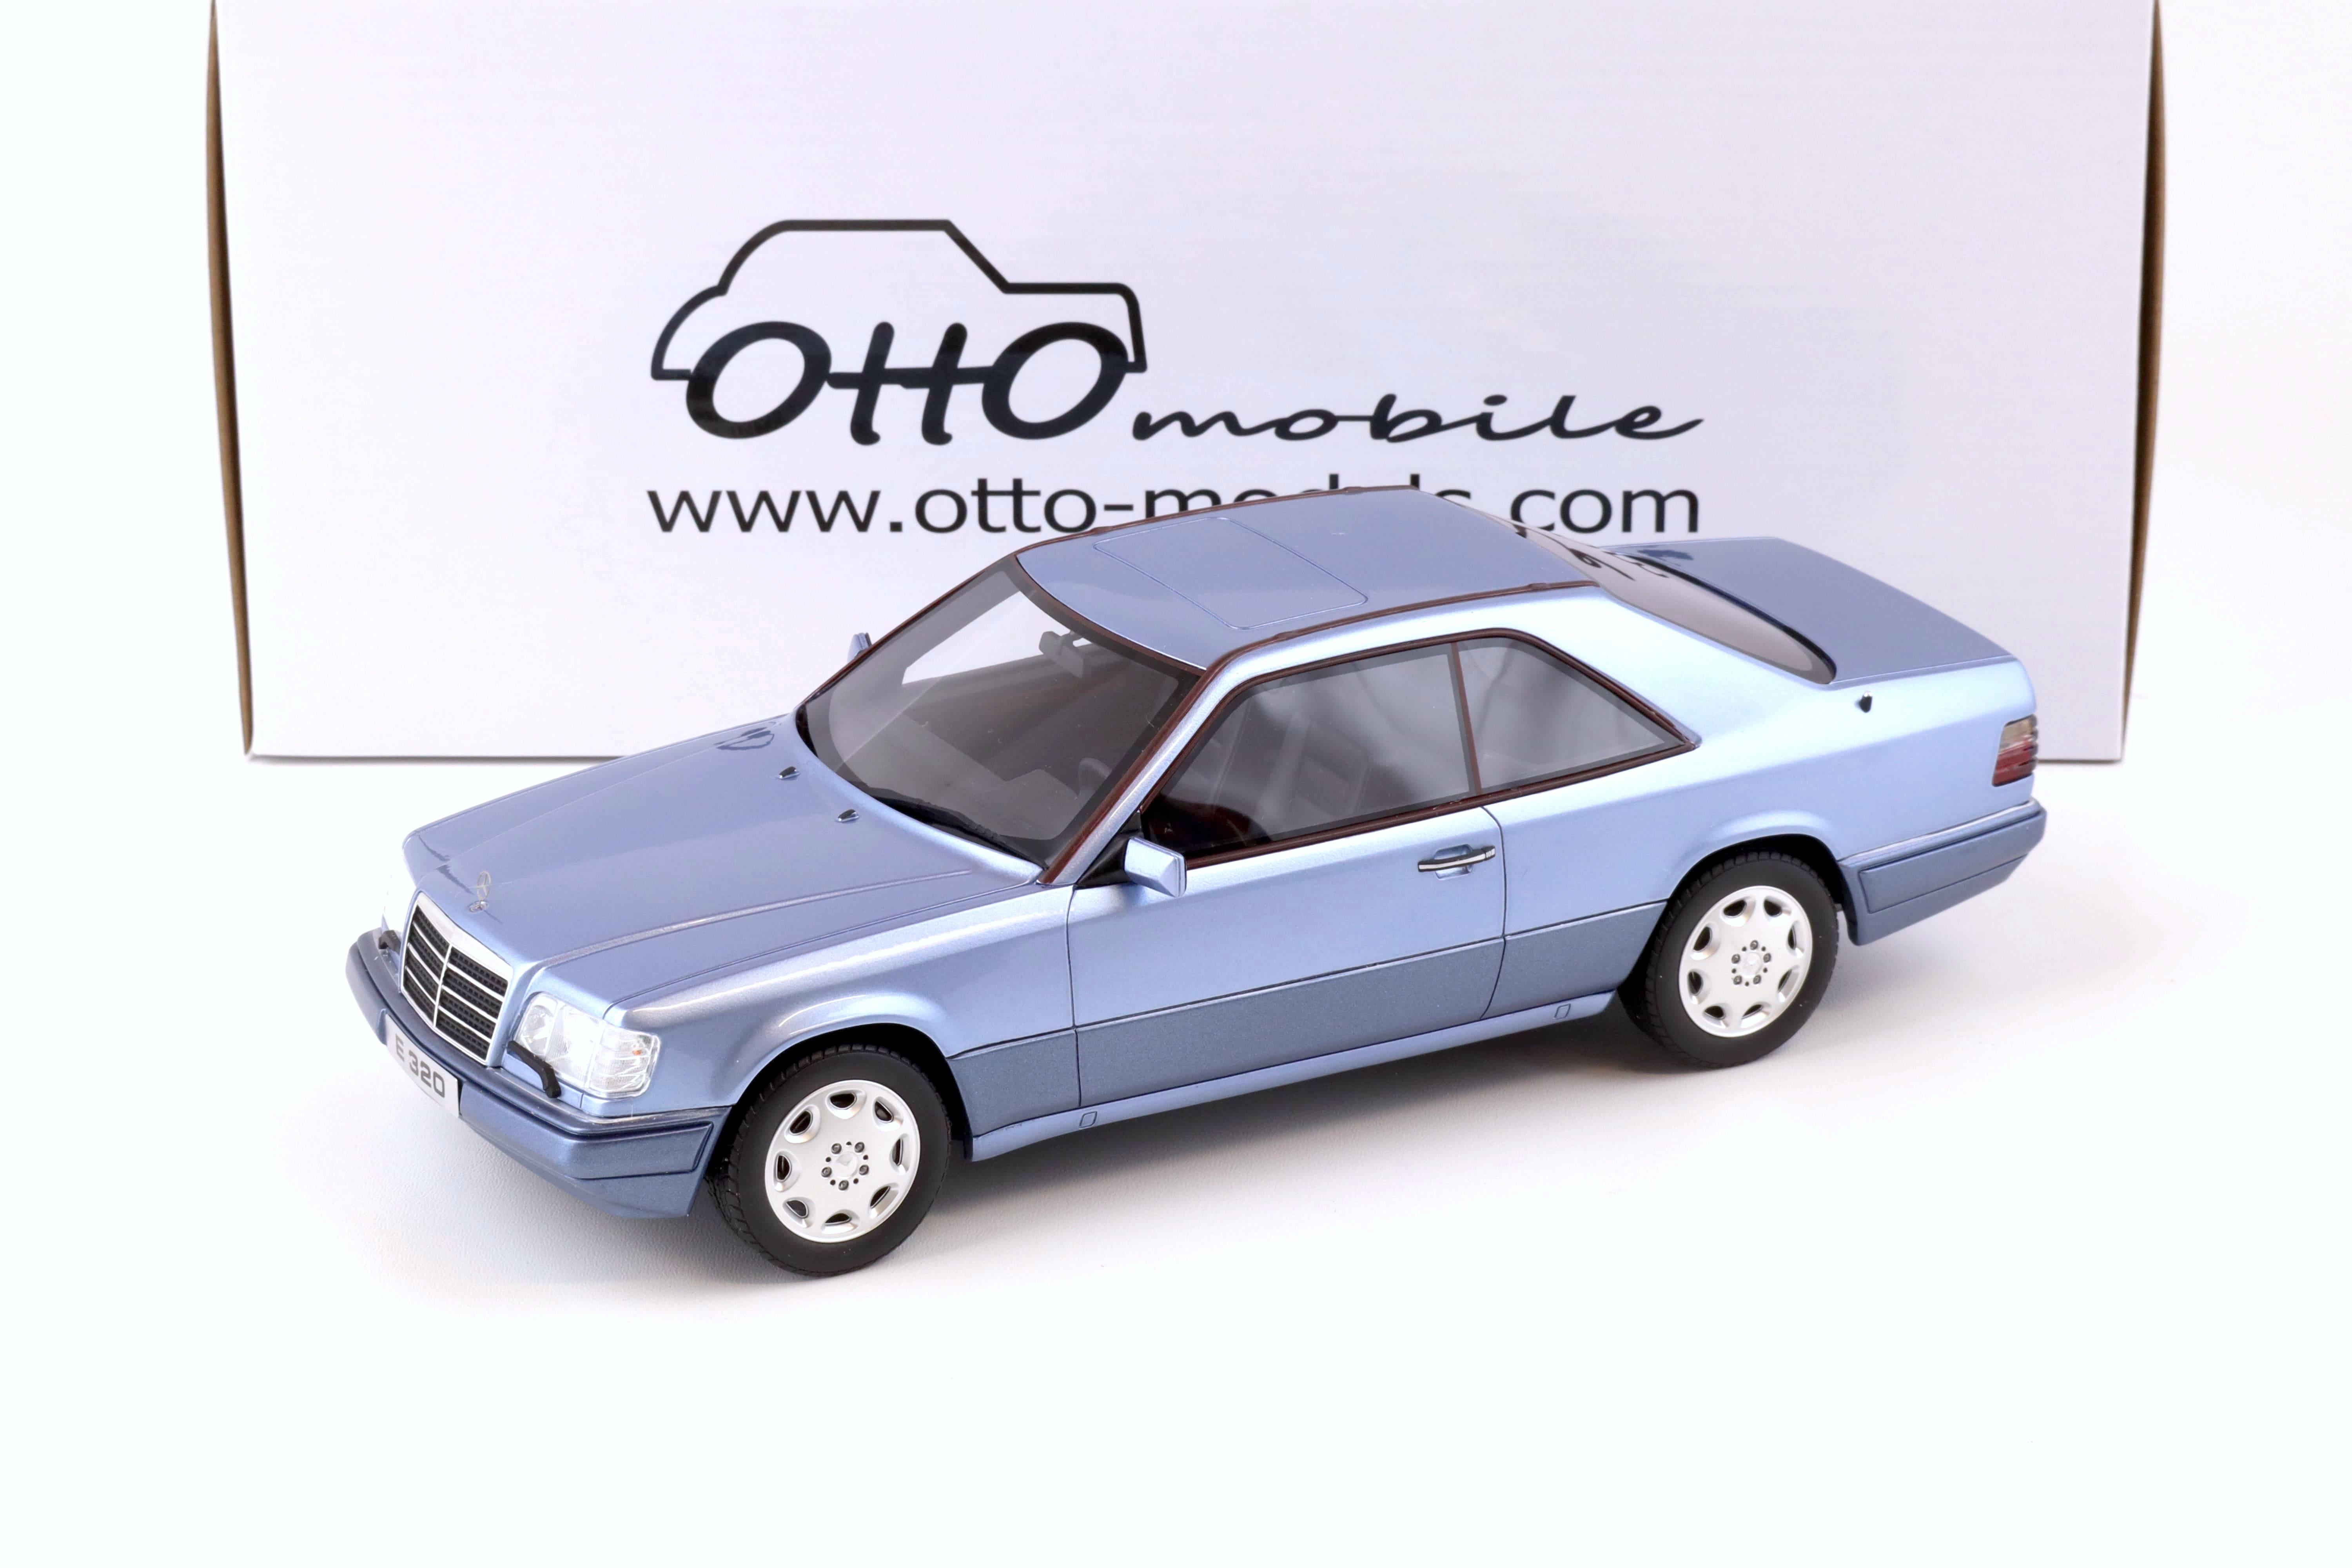 1:18 OTTO mobile OT682 Mercedes E320 (C124) Coupe 1986 blue metallic